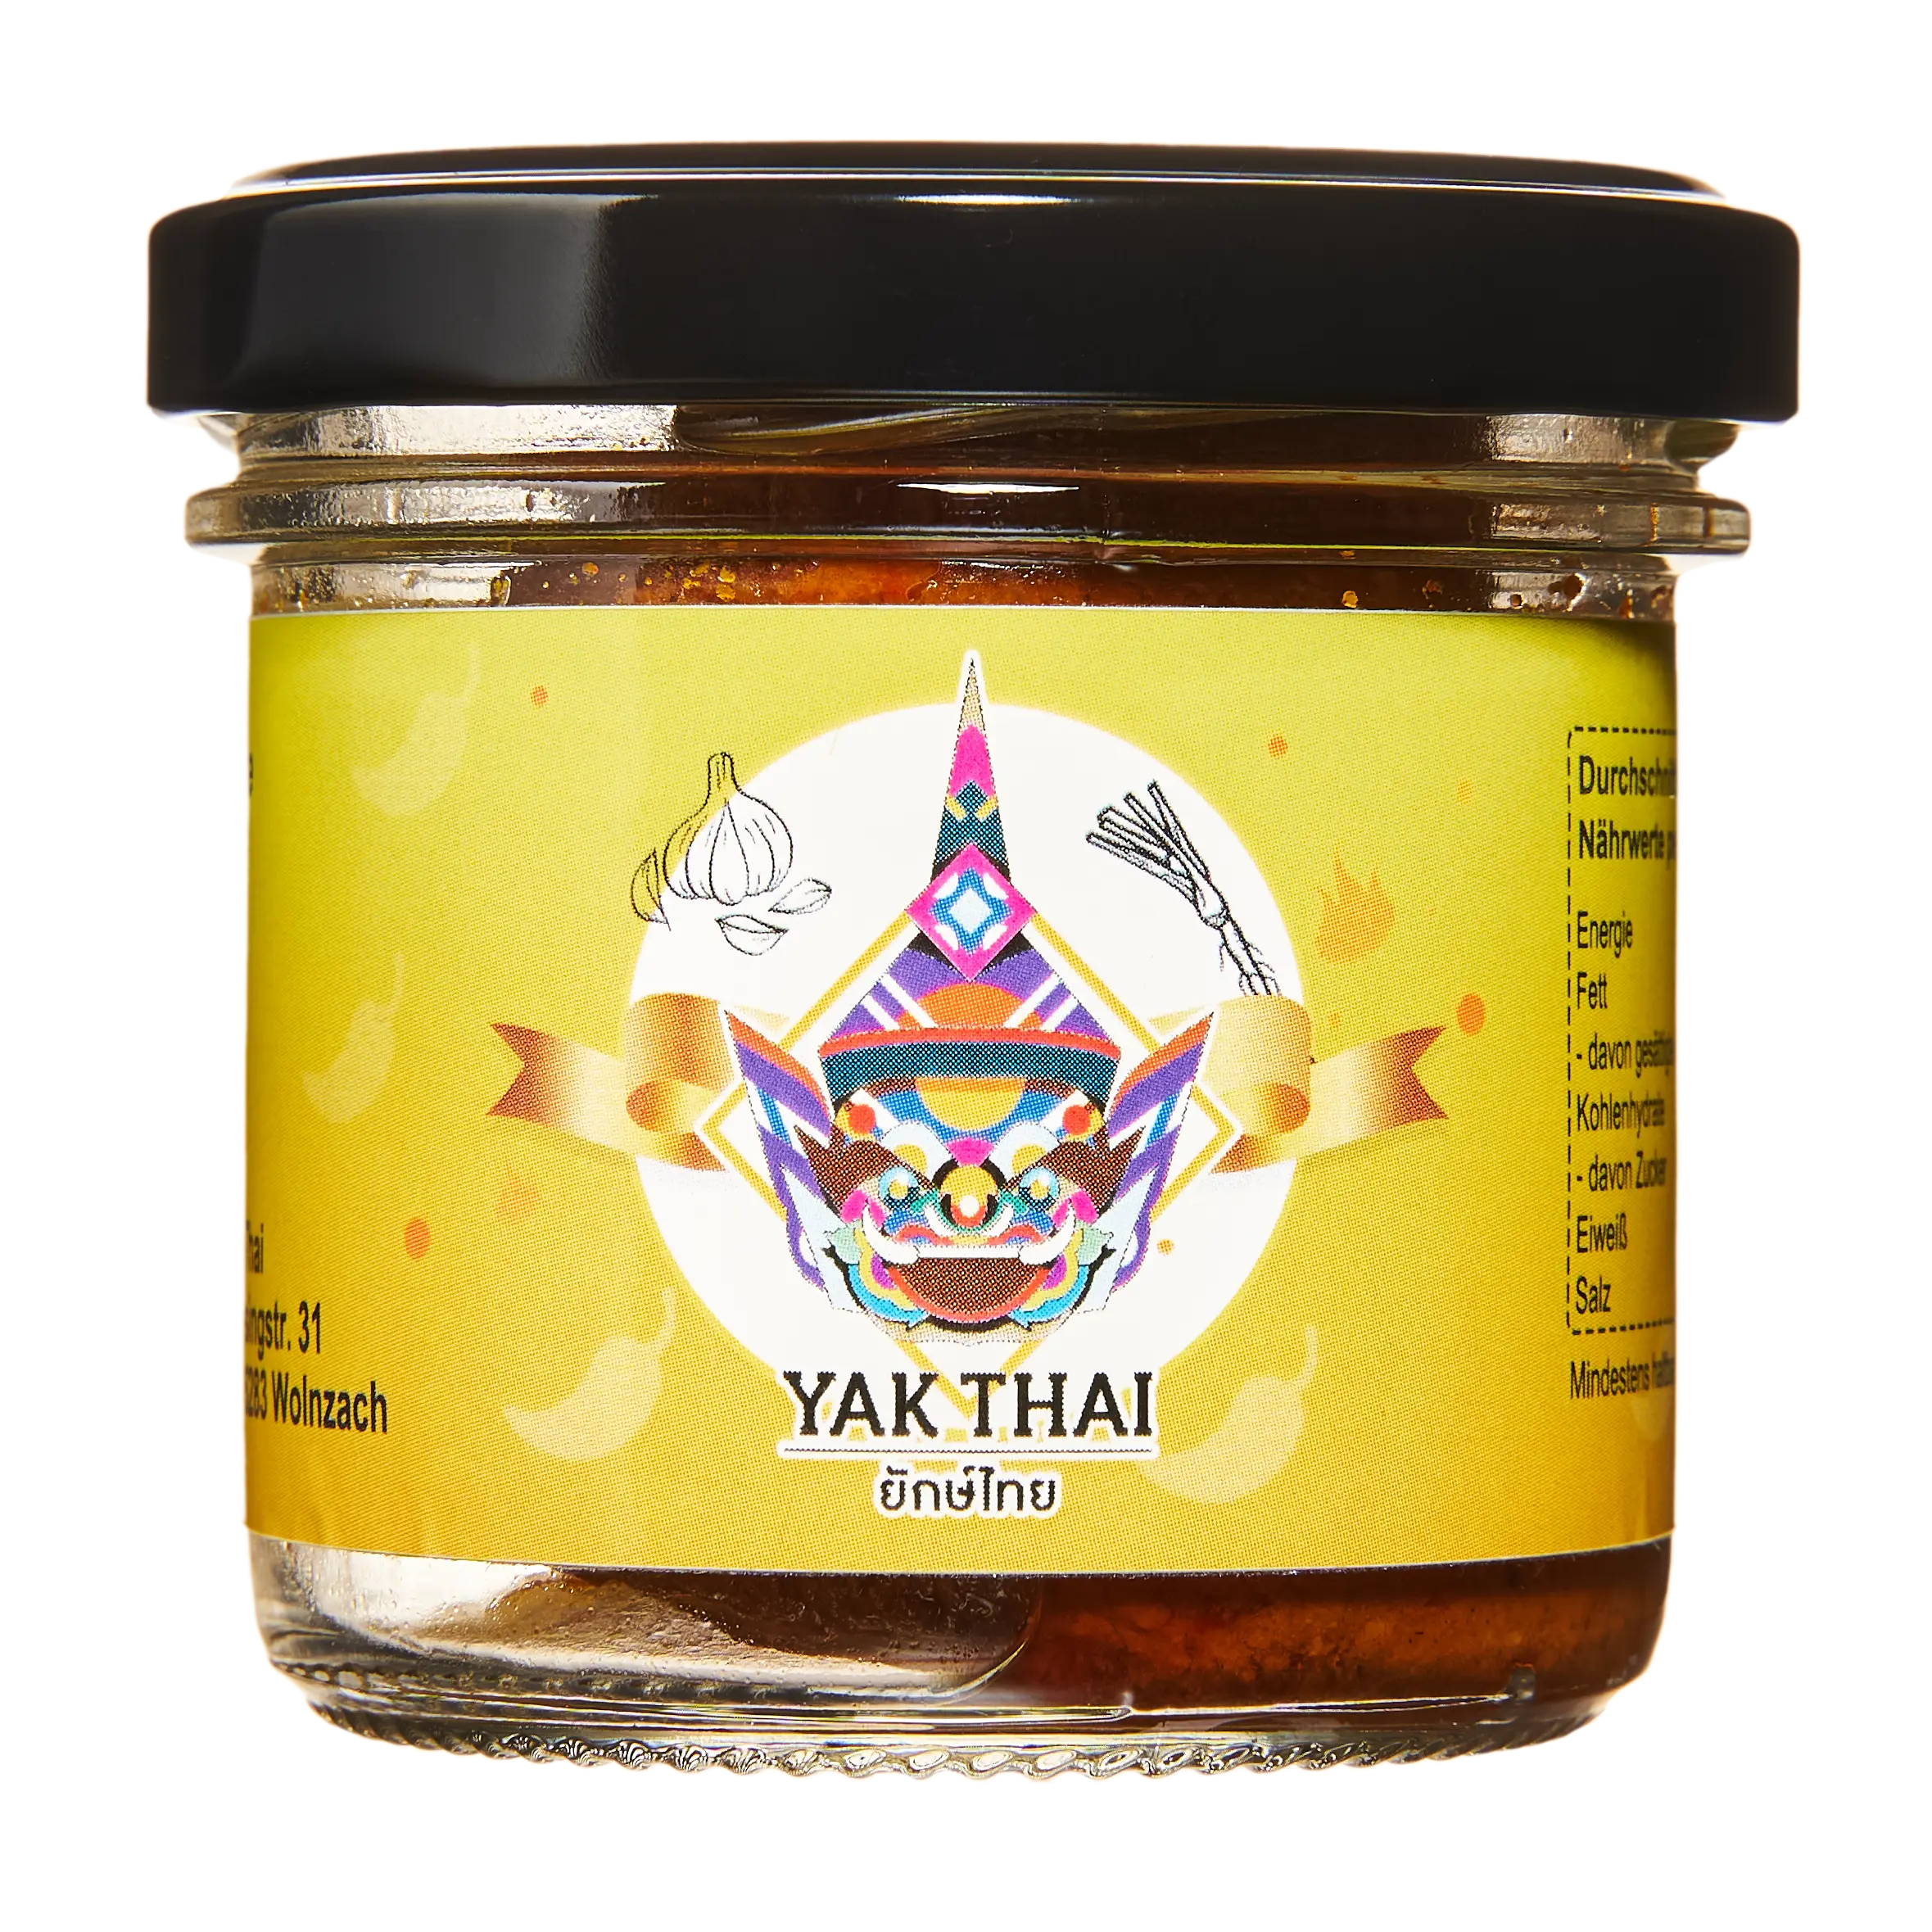 Yak Thai Khao Soi Currypaste Gaeng Khao Soi 1